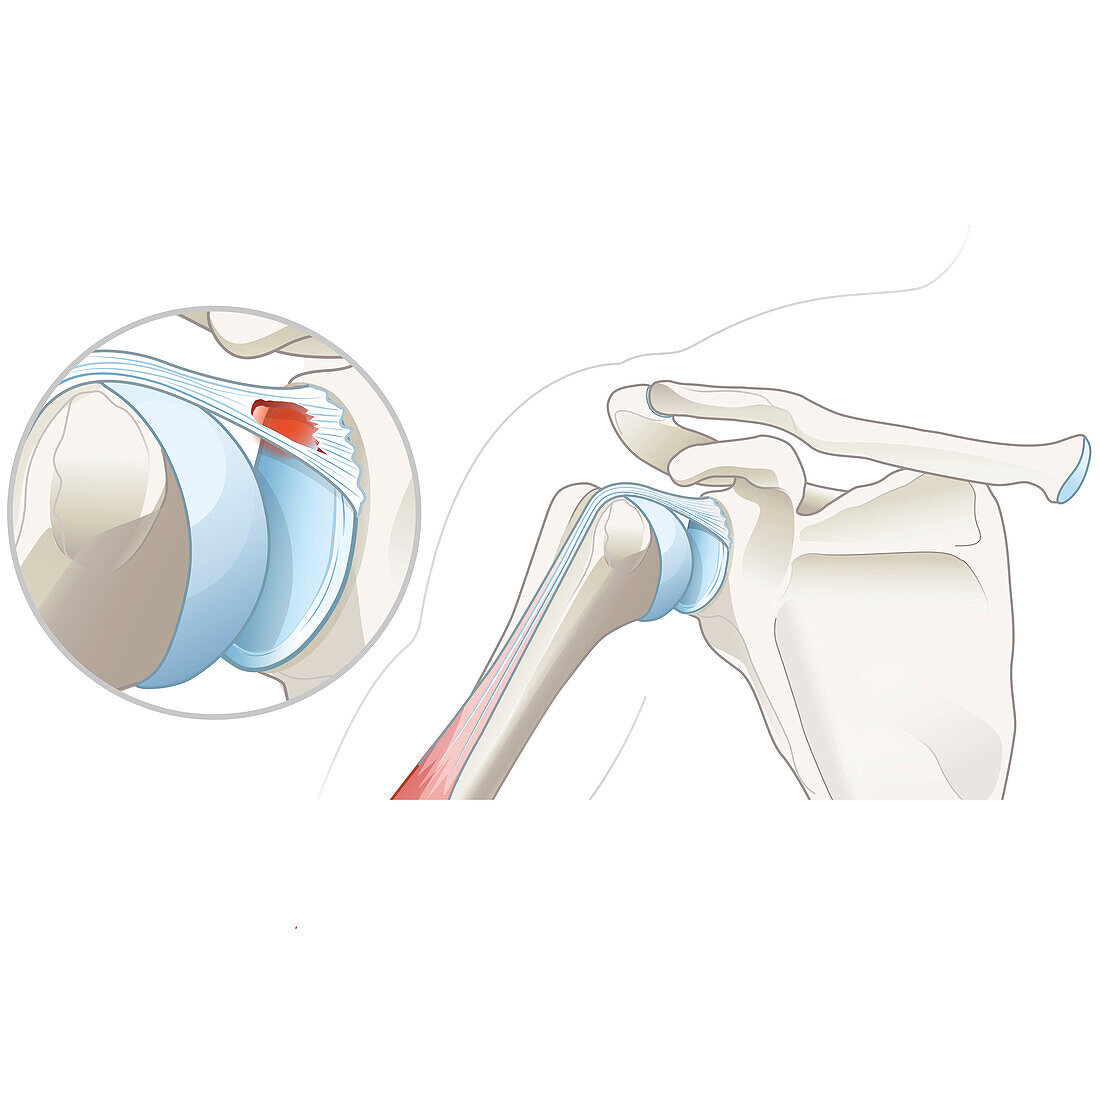 SLAP lesion of the shoulder, illustration